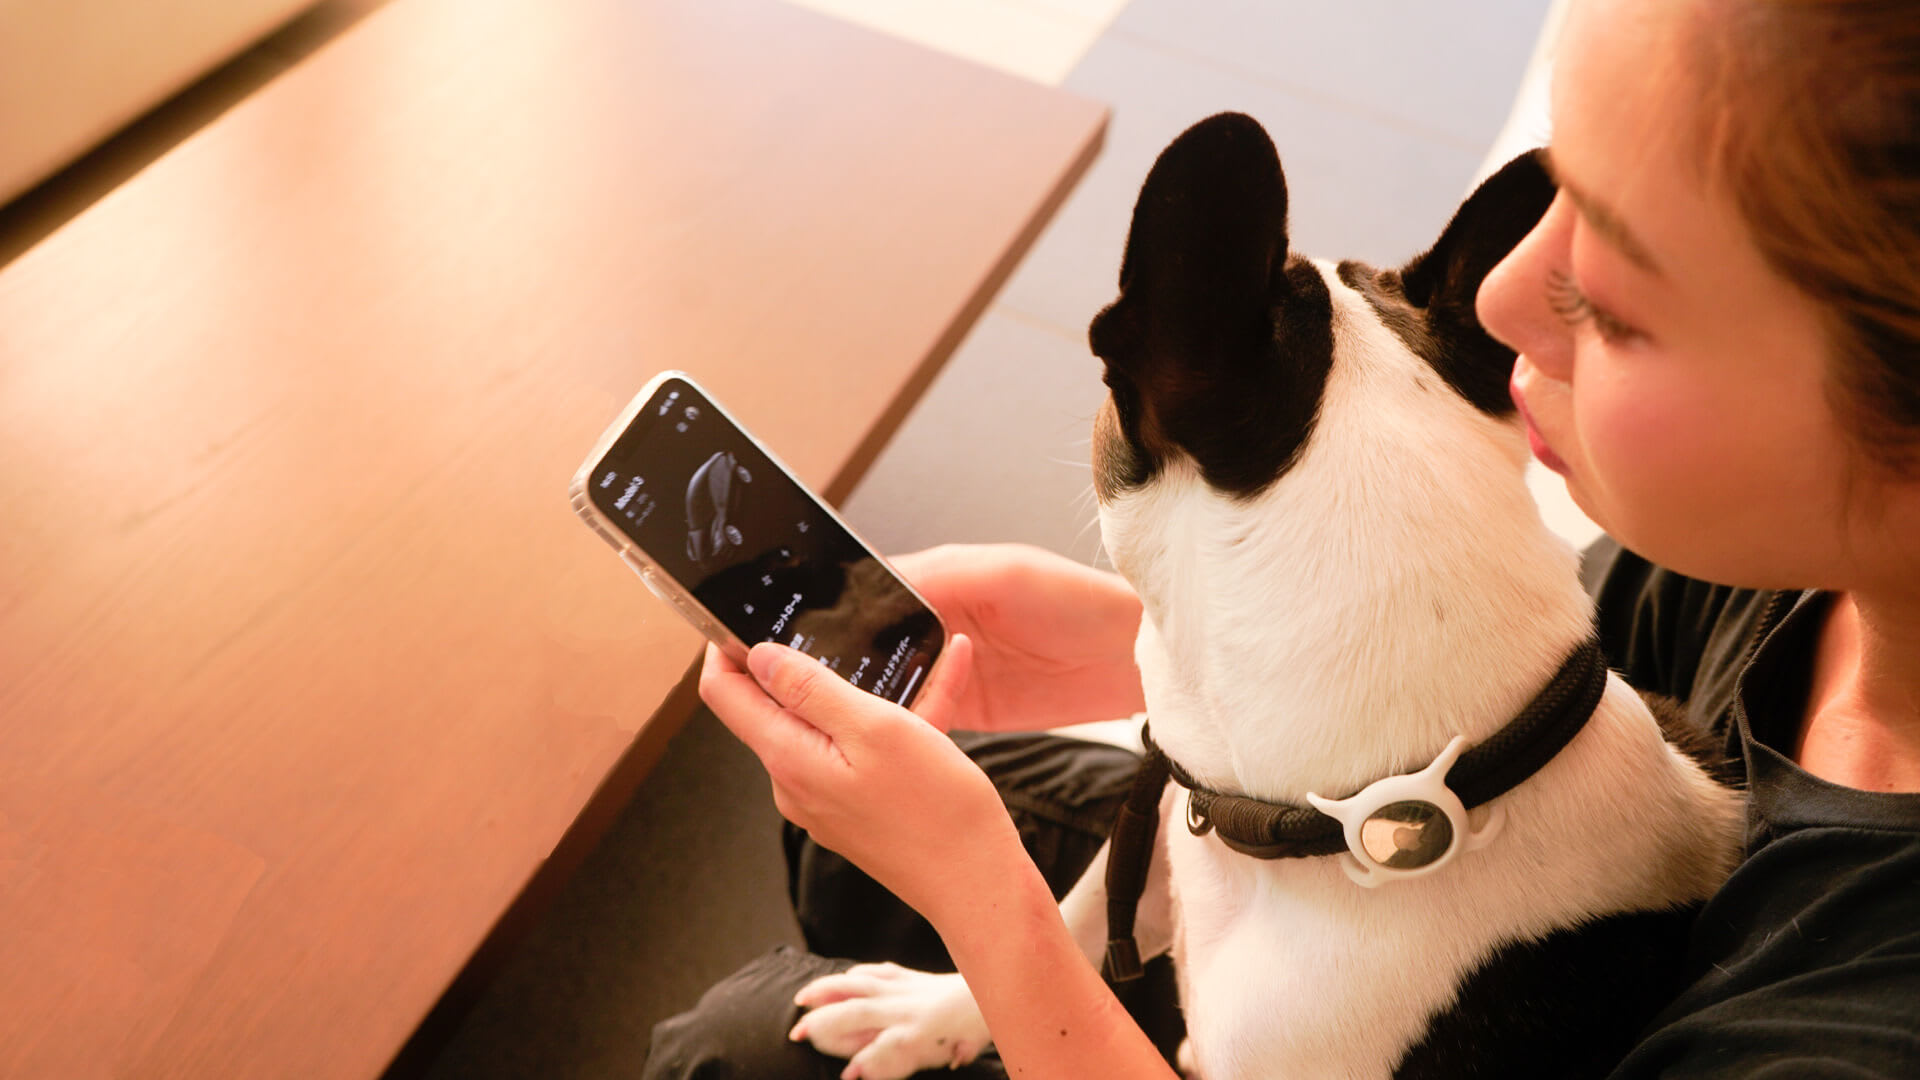 Tesla owner using Tesla app with her dog on her knees